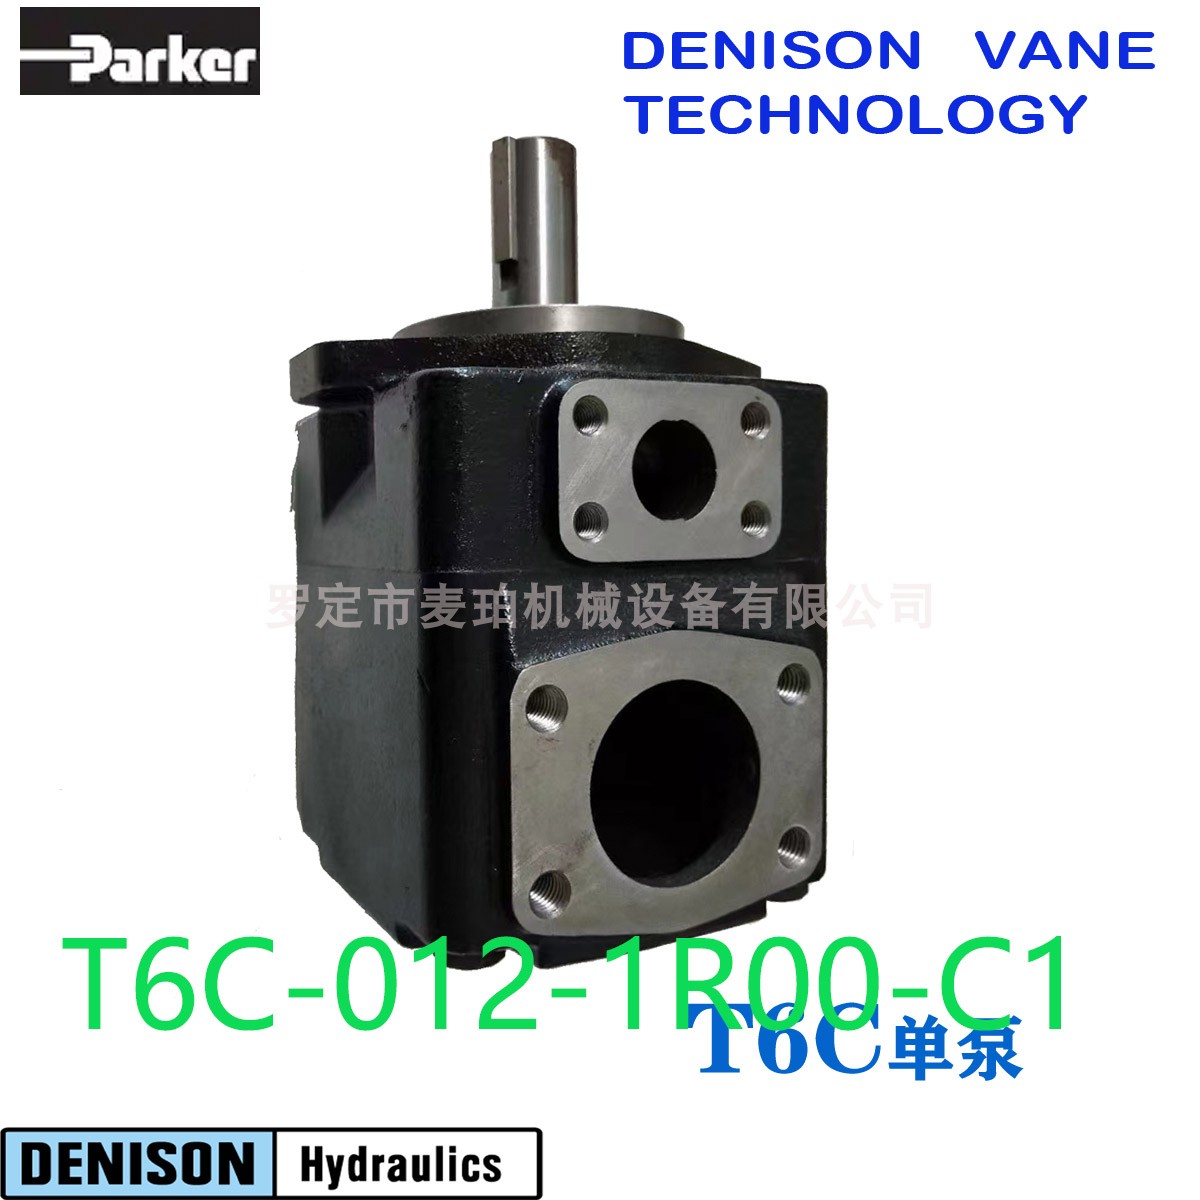 丹尼逊叶片泵T6C-012-1R00-C1丹尼逊t6叶片泵结构图液压泵